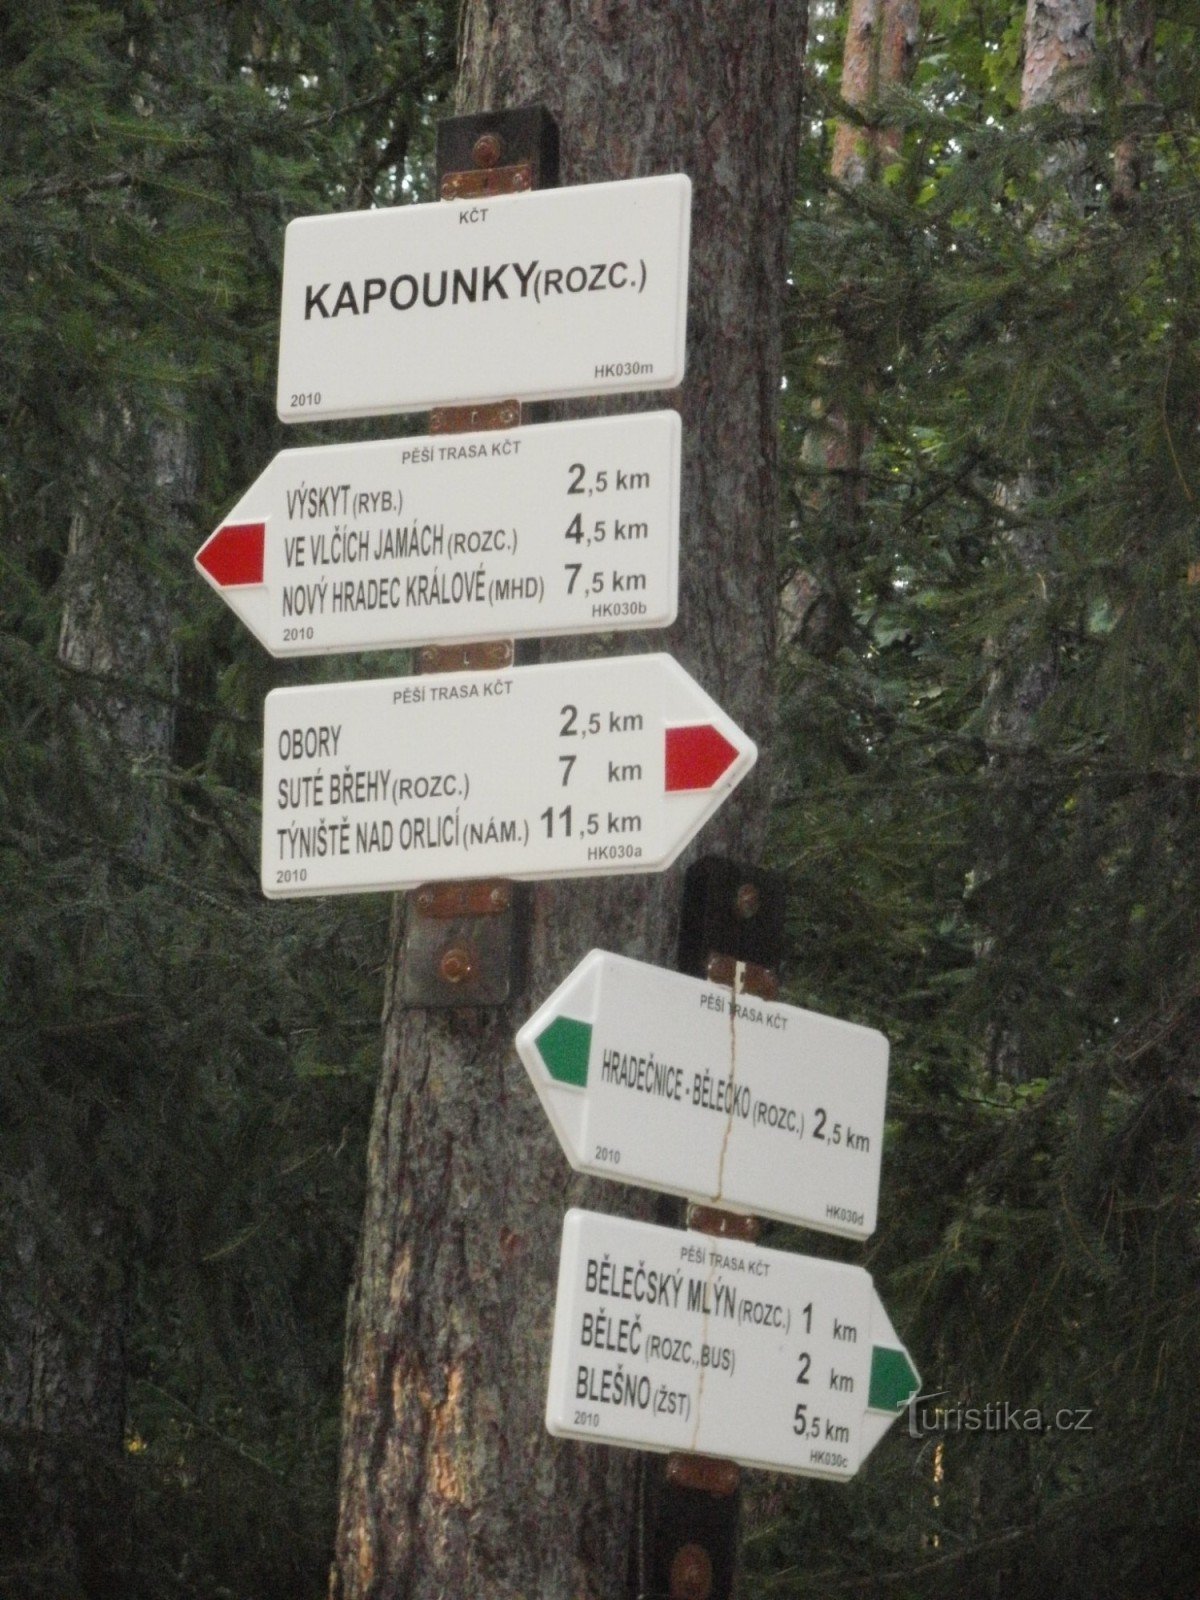 十字路口 Kapounky - Hradecké lesy